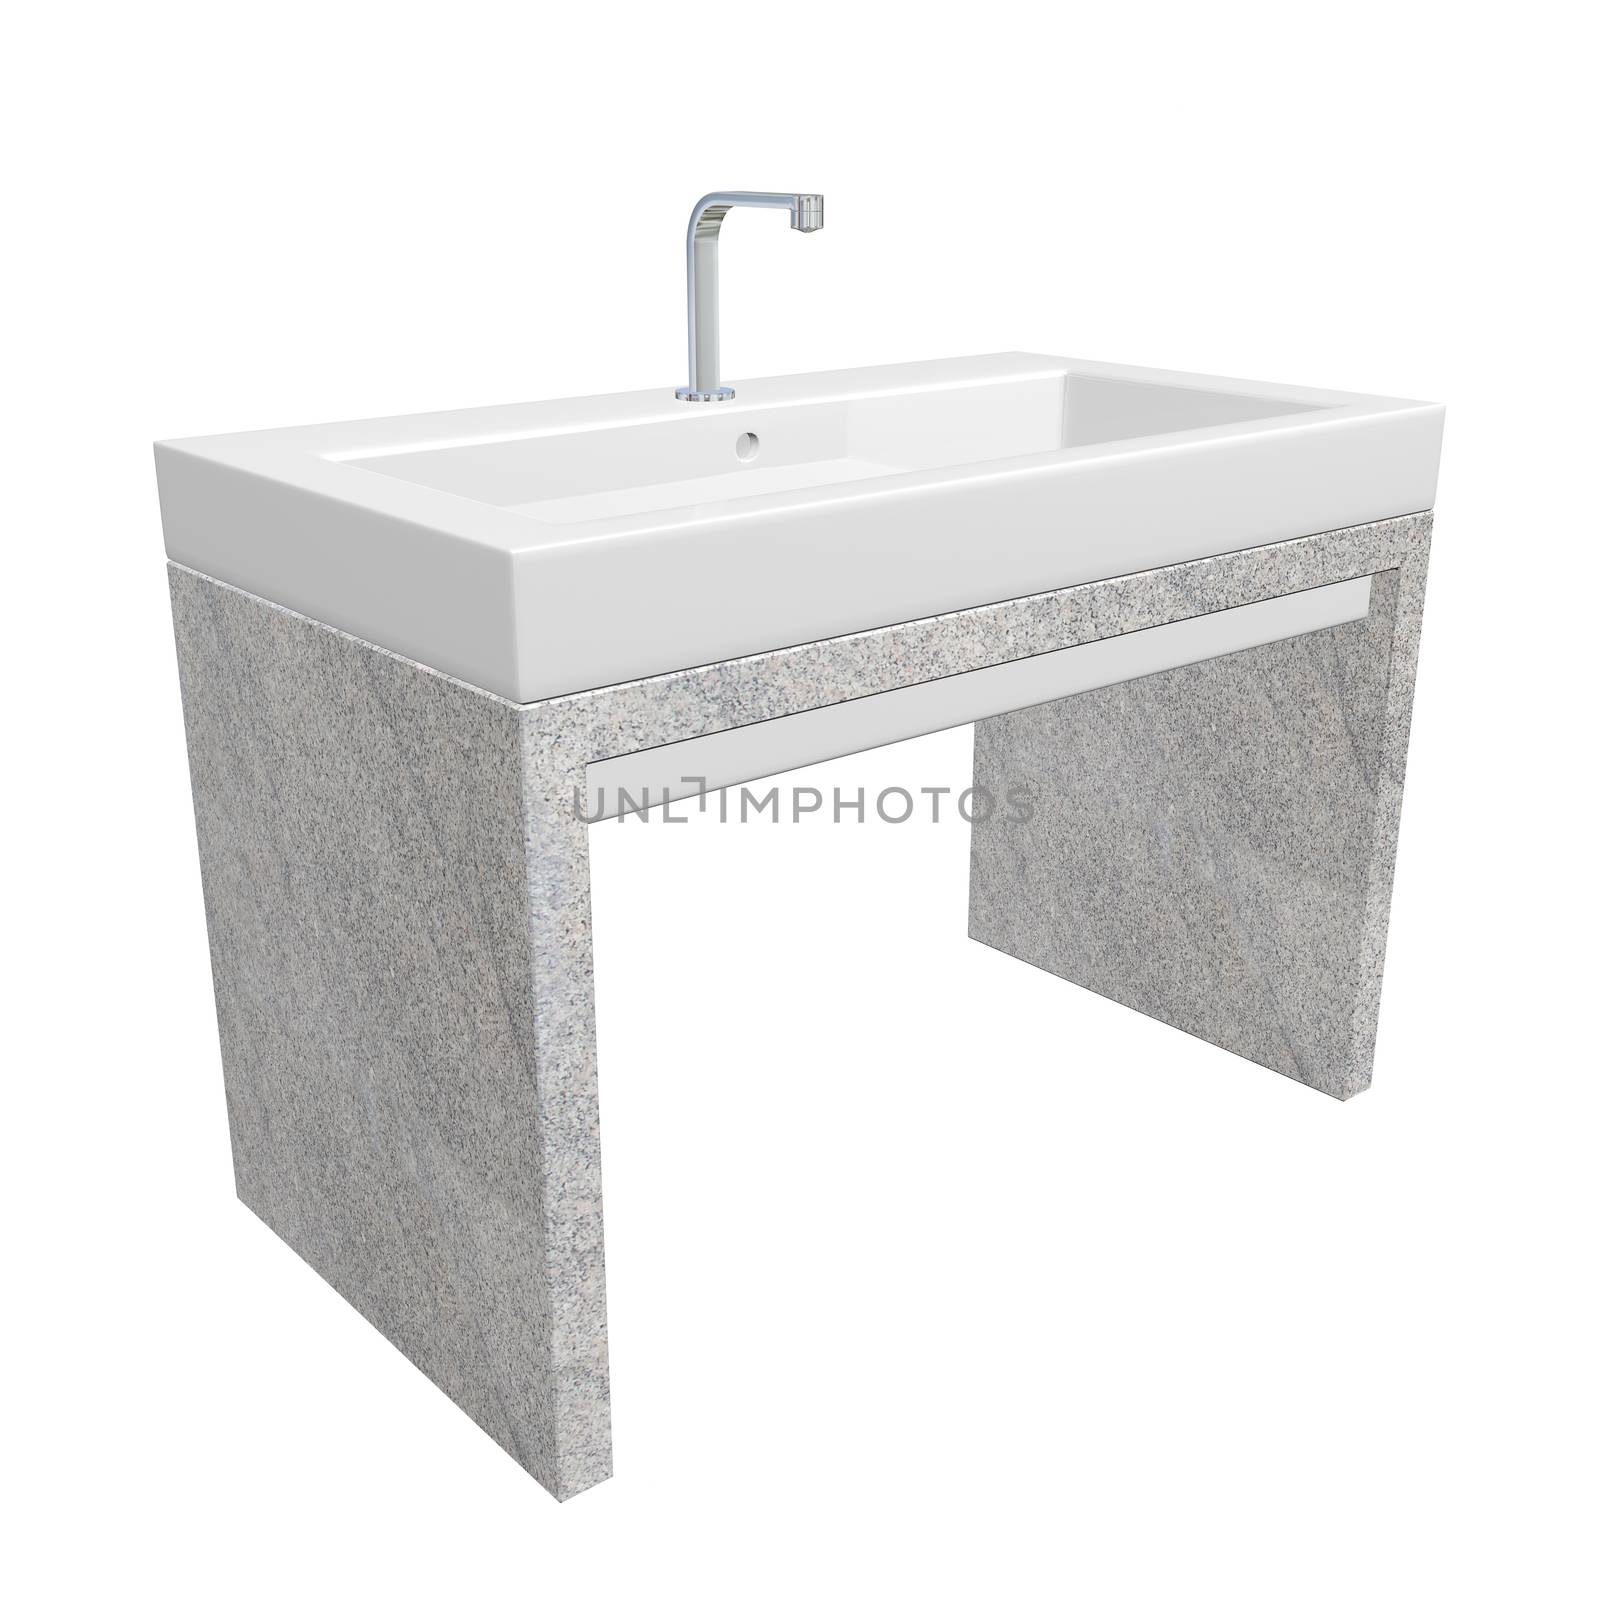 Modern washroom sink set with ceramic or acrylic wash basin, chr by Morphart